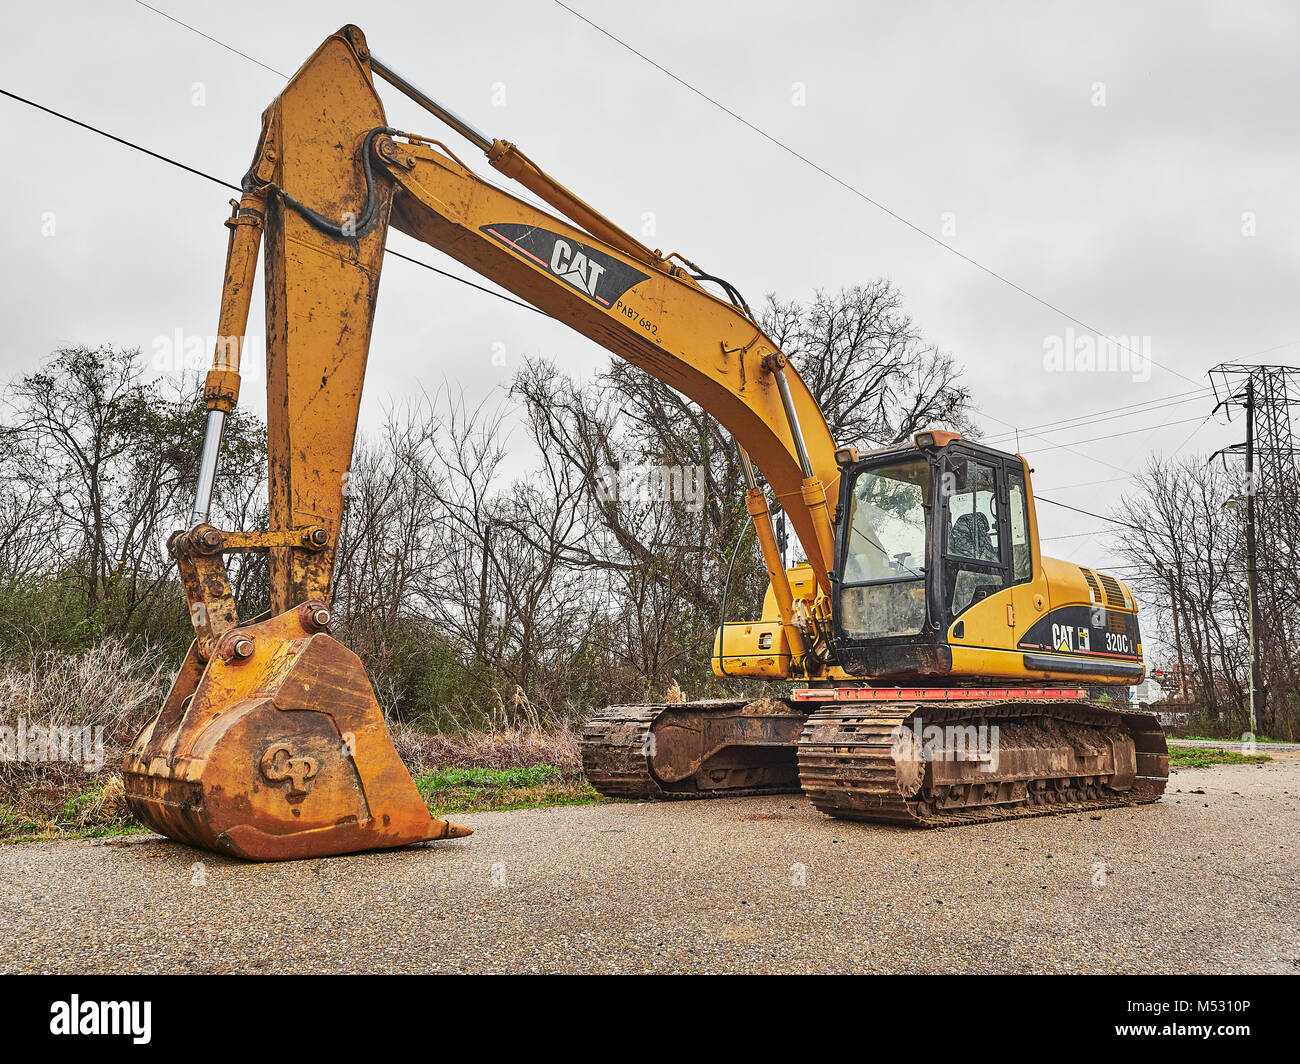 CAT 320C heavy duty, digger excavateur hydraulique, une très grande pièce de machinerie de construction au repos dans la région de Montgomery, en Alabama aux États-Unis. Banque D'Images